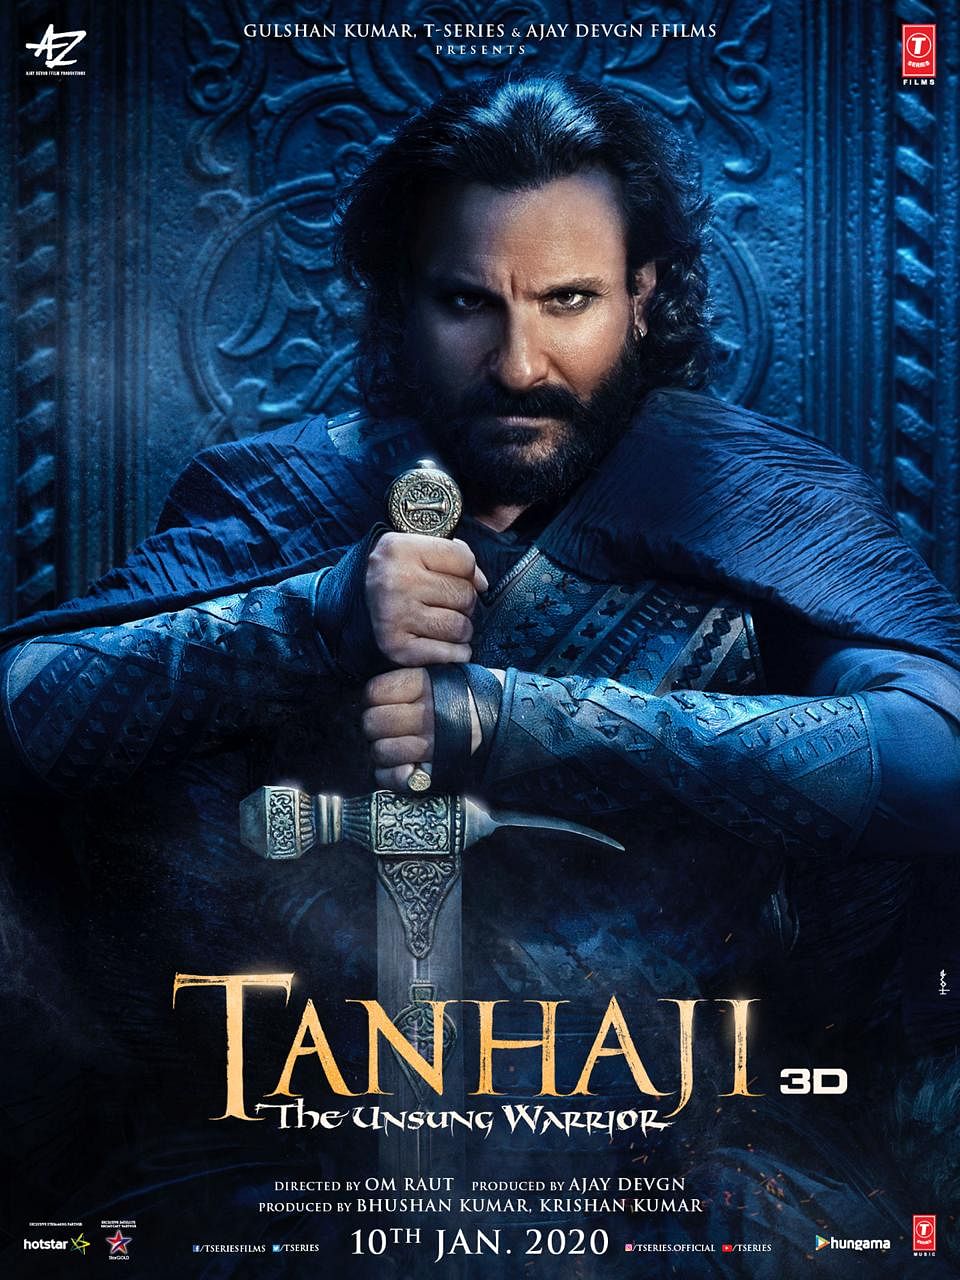 Tanhaji also stars Ajay Devgn in a pivotal role.